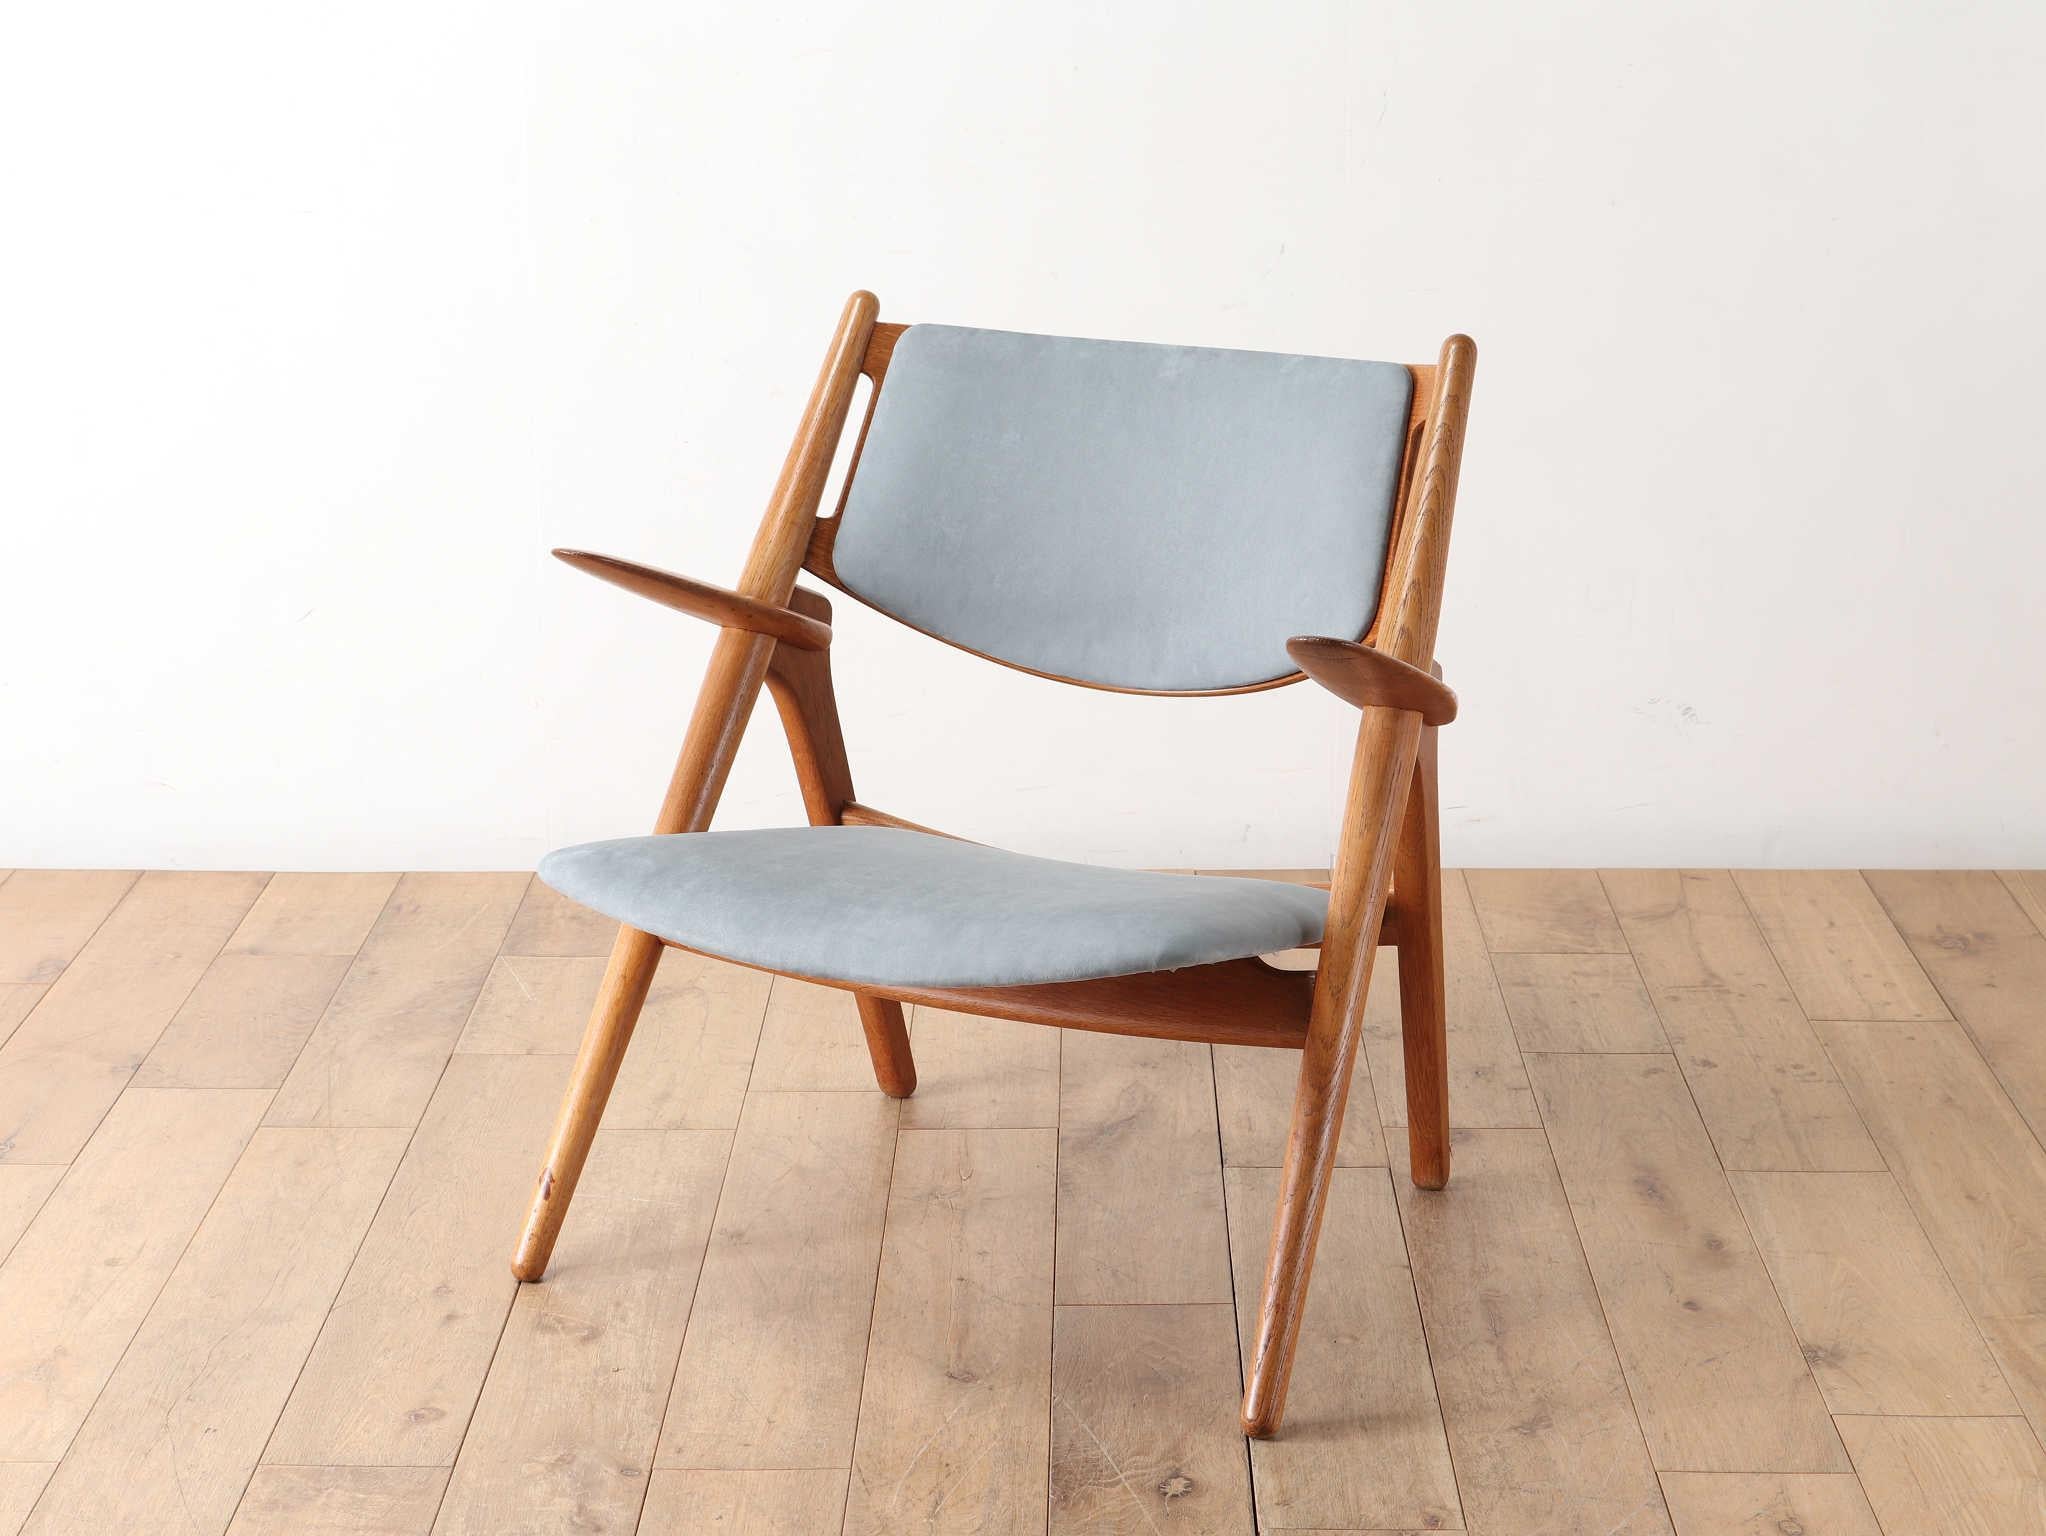 CHAISE SAWBUCK CH28, conçue en 1951 par le maître danois Hans J. Wegner et produite par Carl Hansen & Søn. Une chaise merveilleusement confortable qui montre l'équilibre parfait entre la forme et la fonction de Hans J.  La recherche unique de Wegner